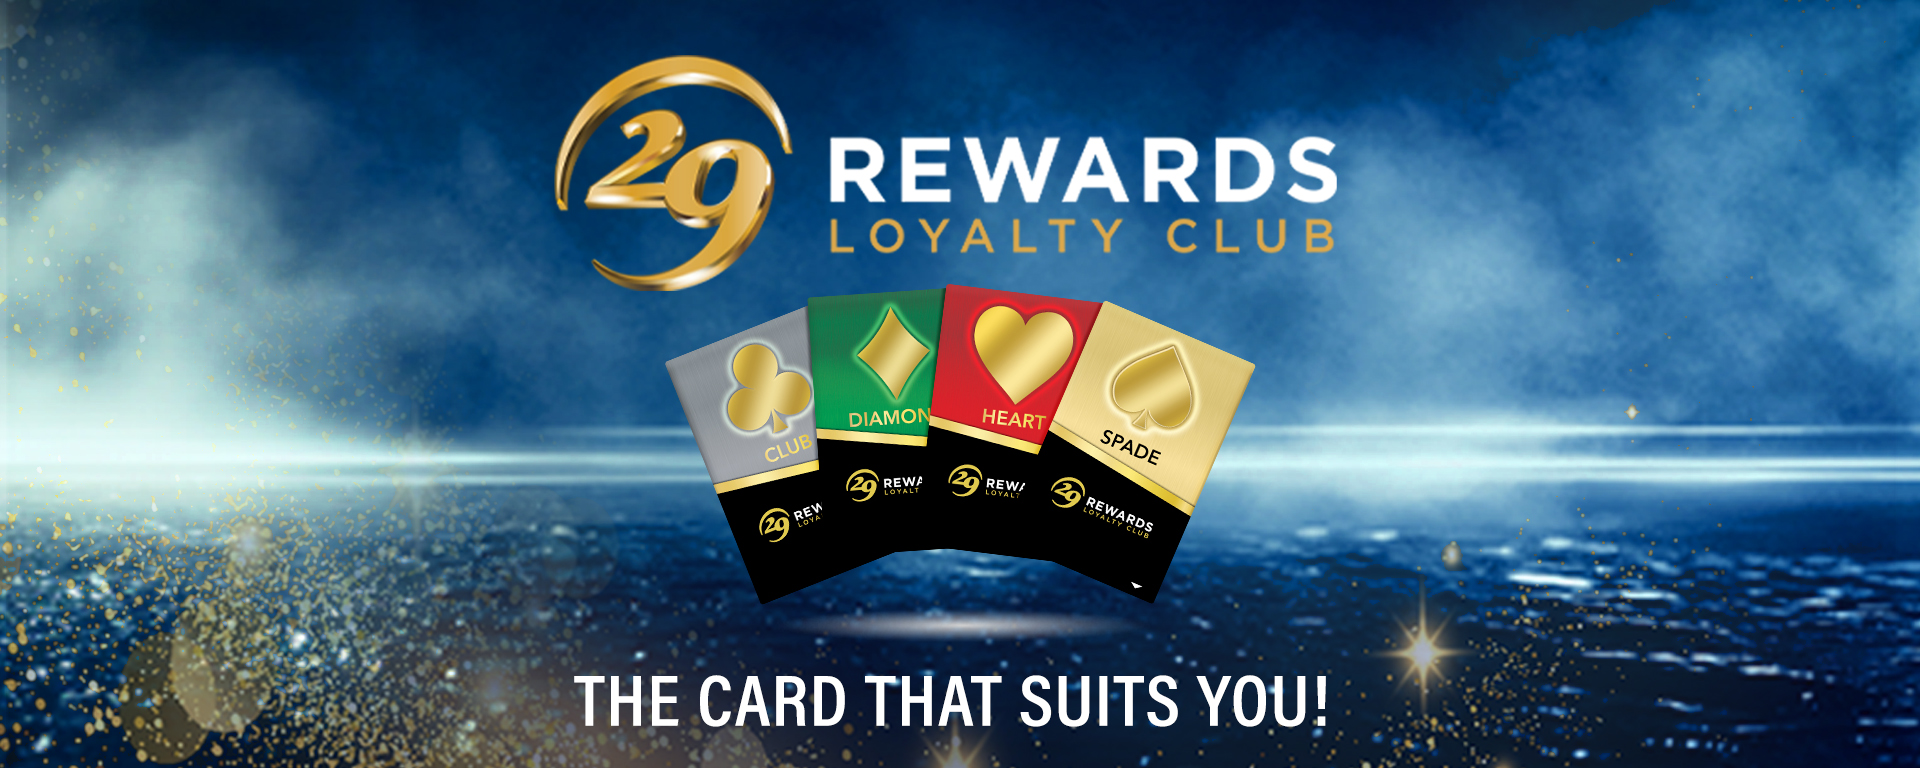 29 Rewards Loyalty Club